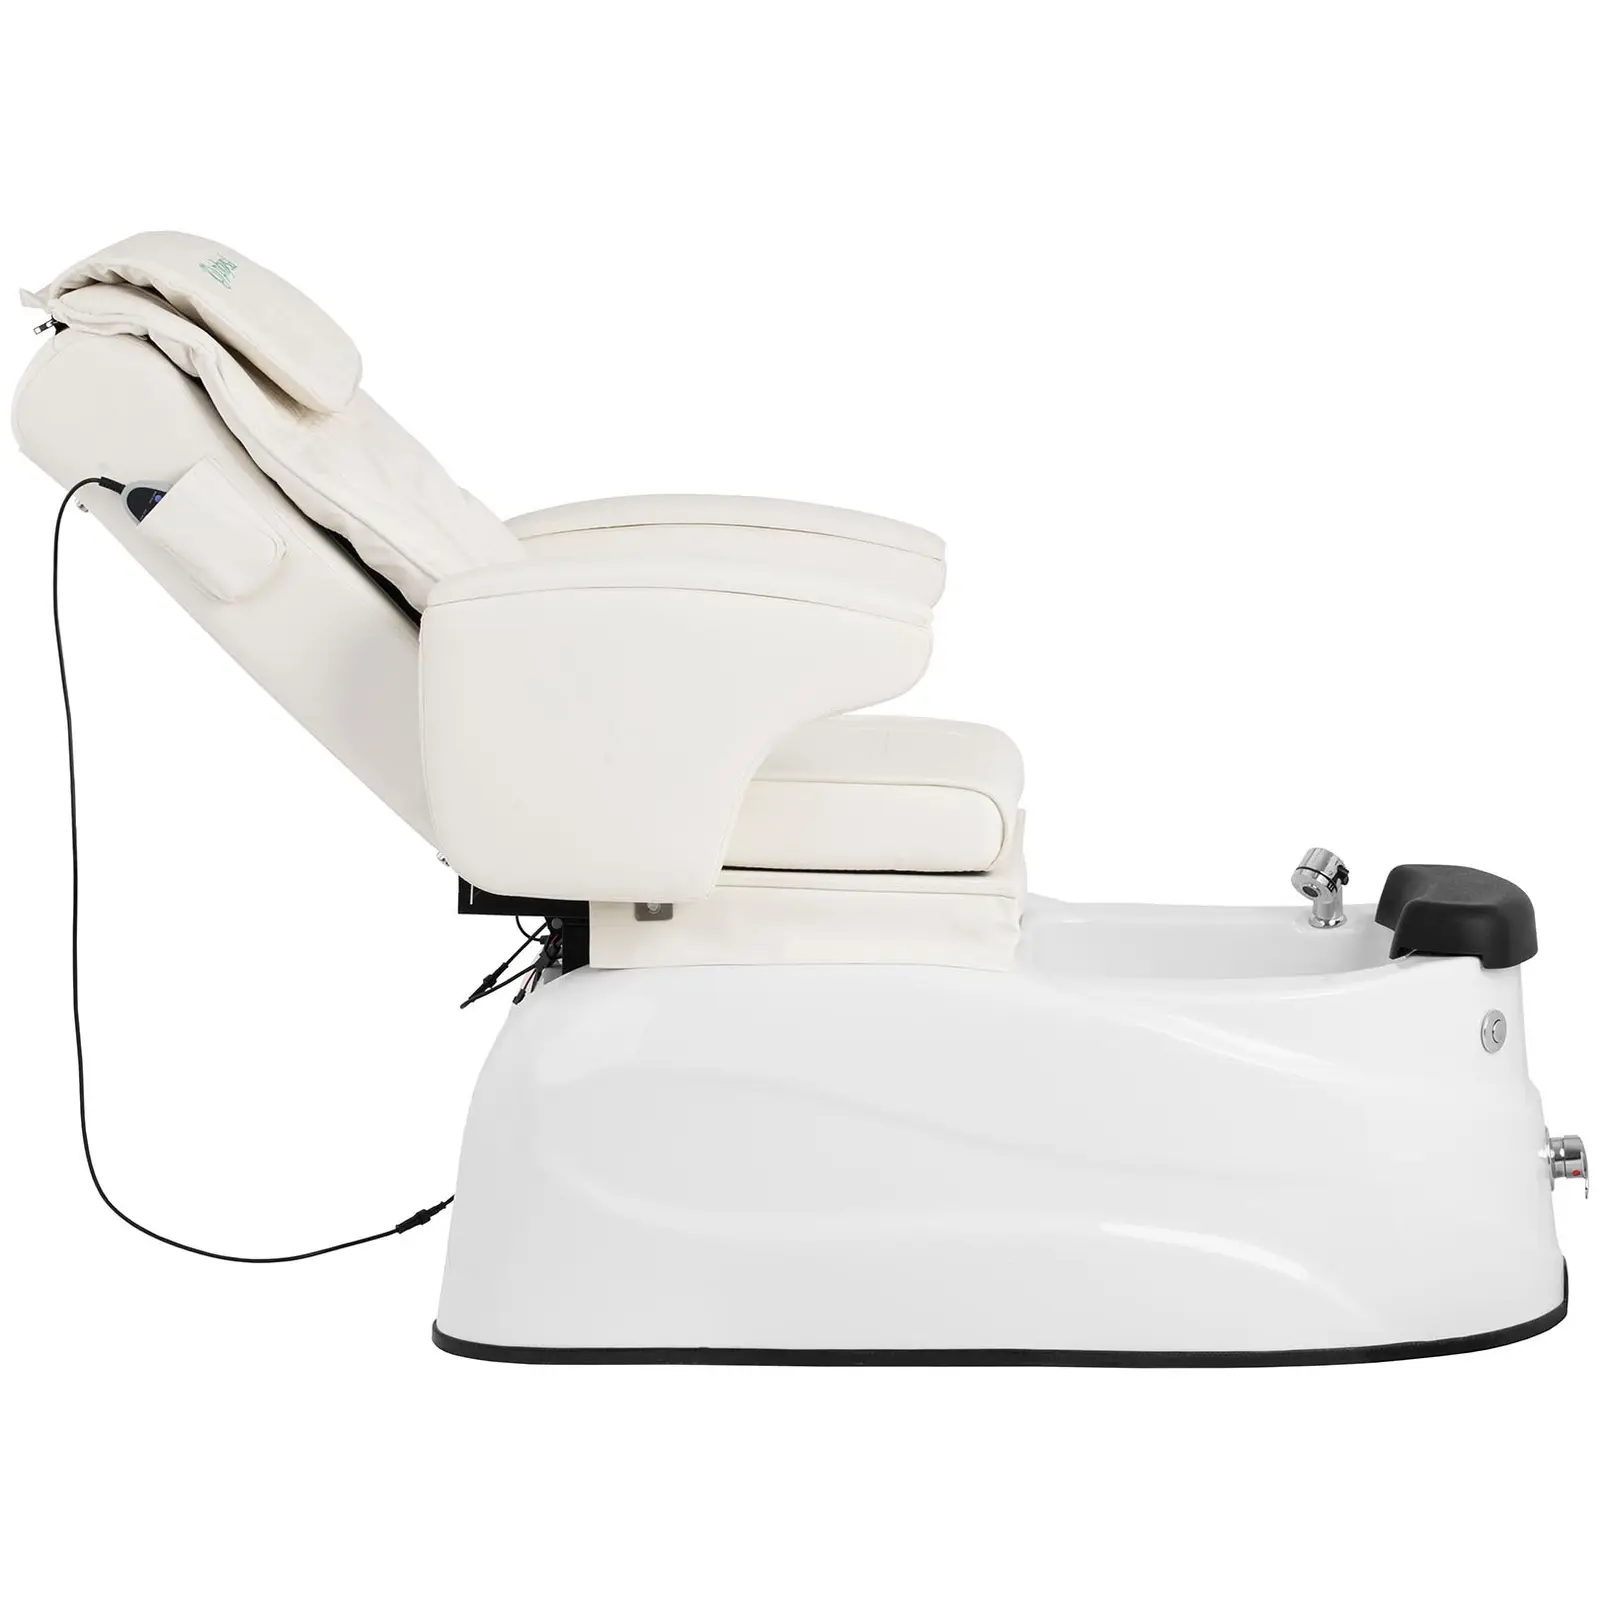 Elektrisk fotvårdsstol - Med fotbad - 105 W - 150 kg - Vit - Rygg- och nackmassage